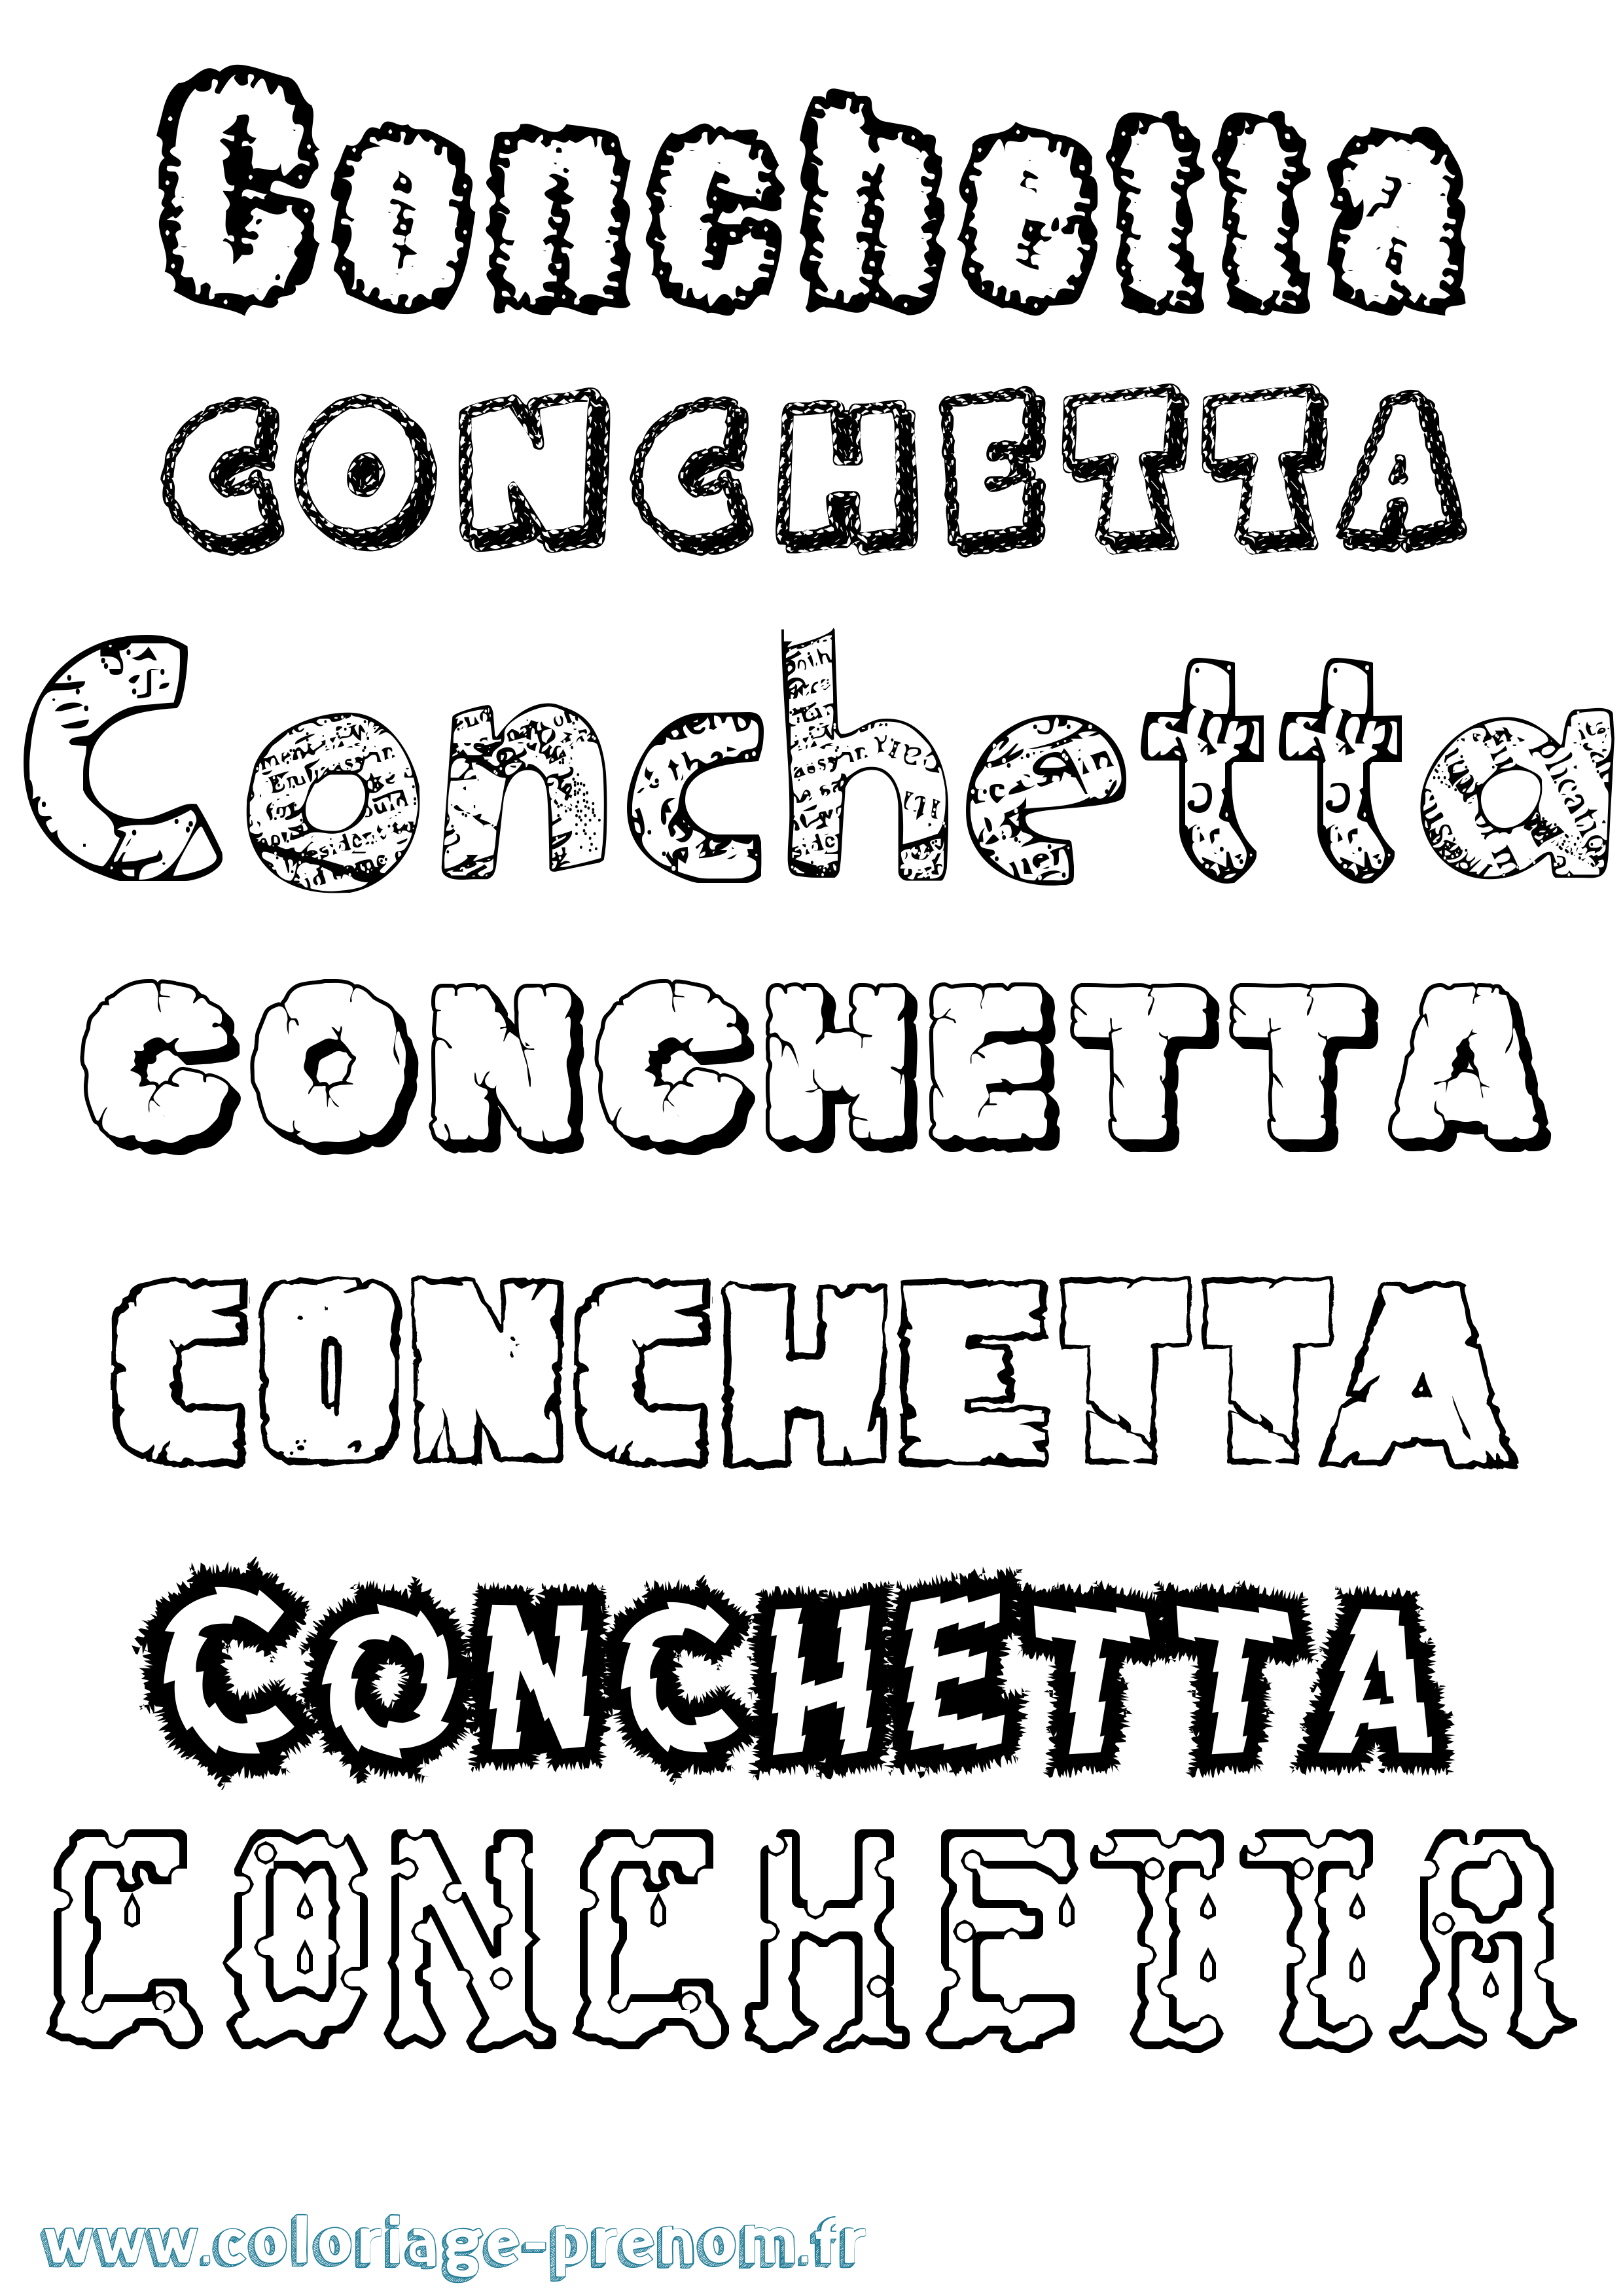 Coloriage prénom Conchetta Destructuré